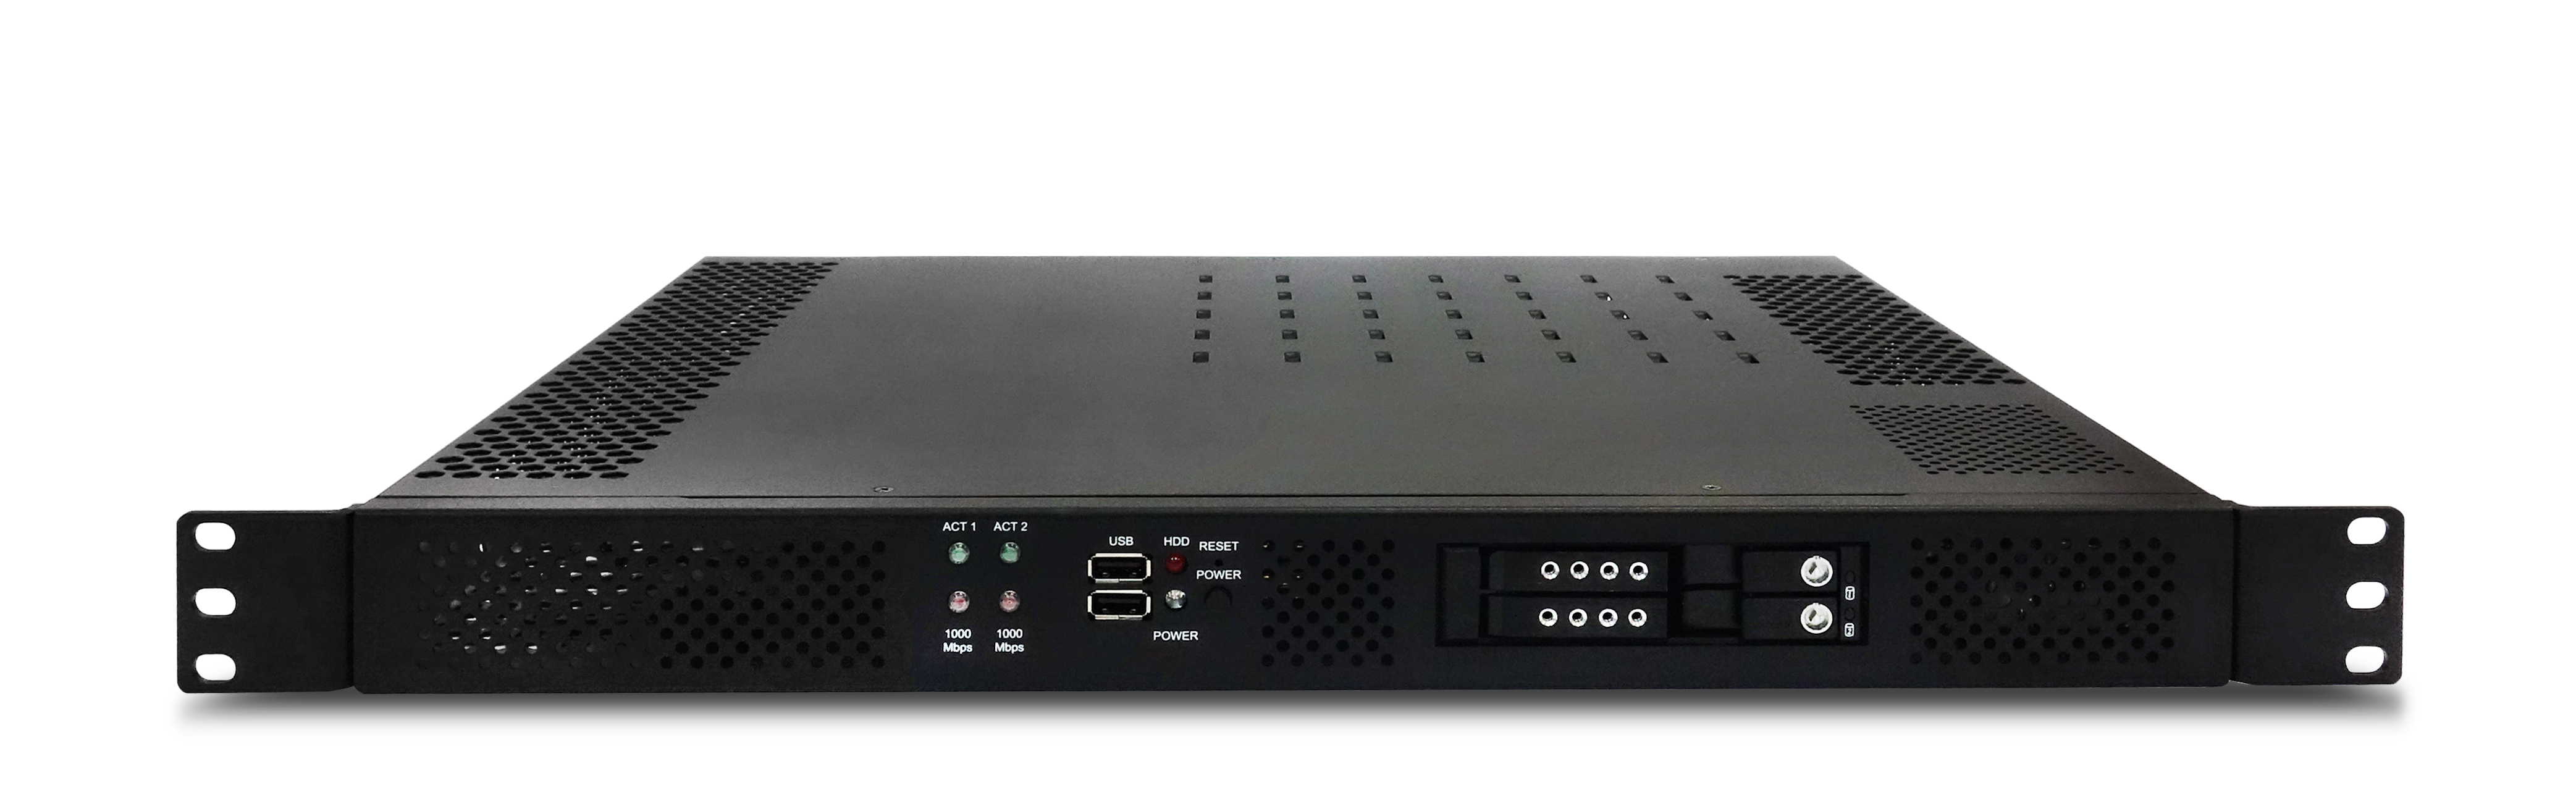 Компактный безвентиляторный высокопроизводительный промышленный сервер IS-SYS10FN